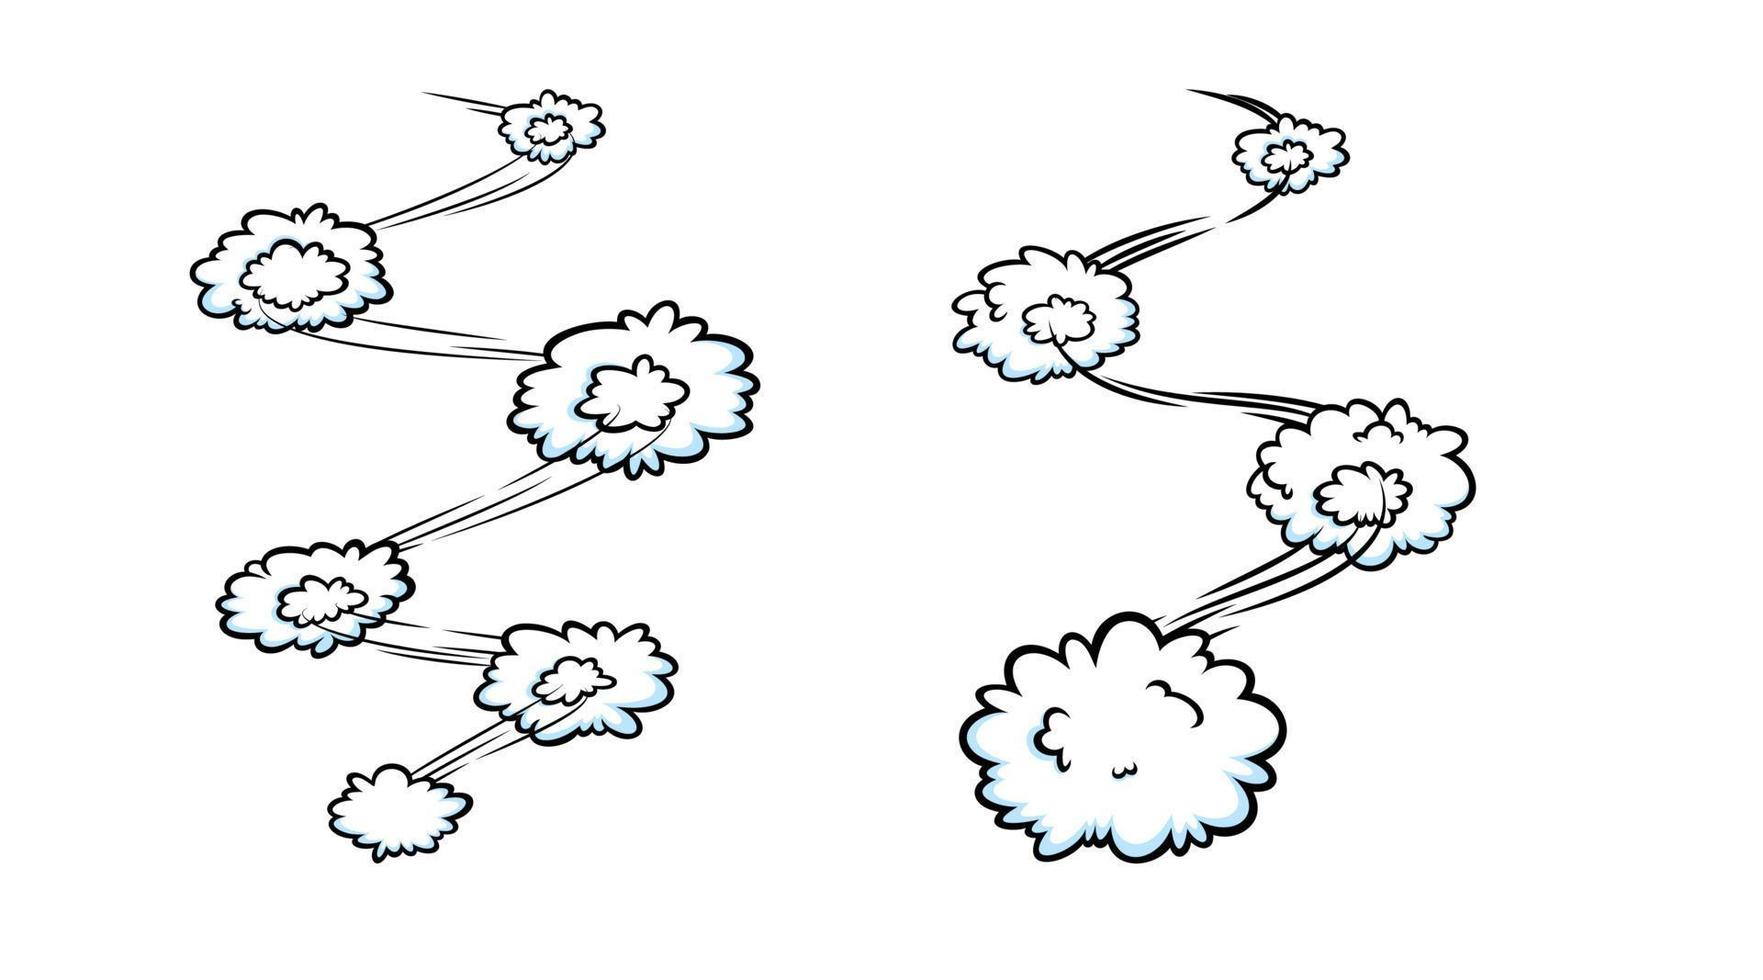 efeito de velocidade em quadrinhos com nuvens. nuvens em quadrinhos com linhas de trilha de movimento. ilustração vetorial vetor